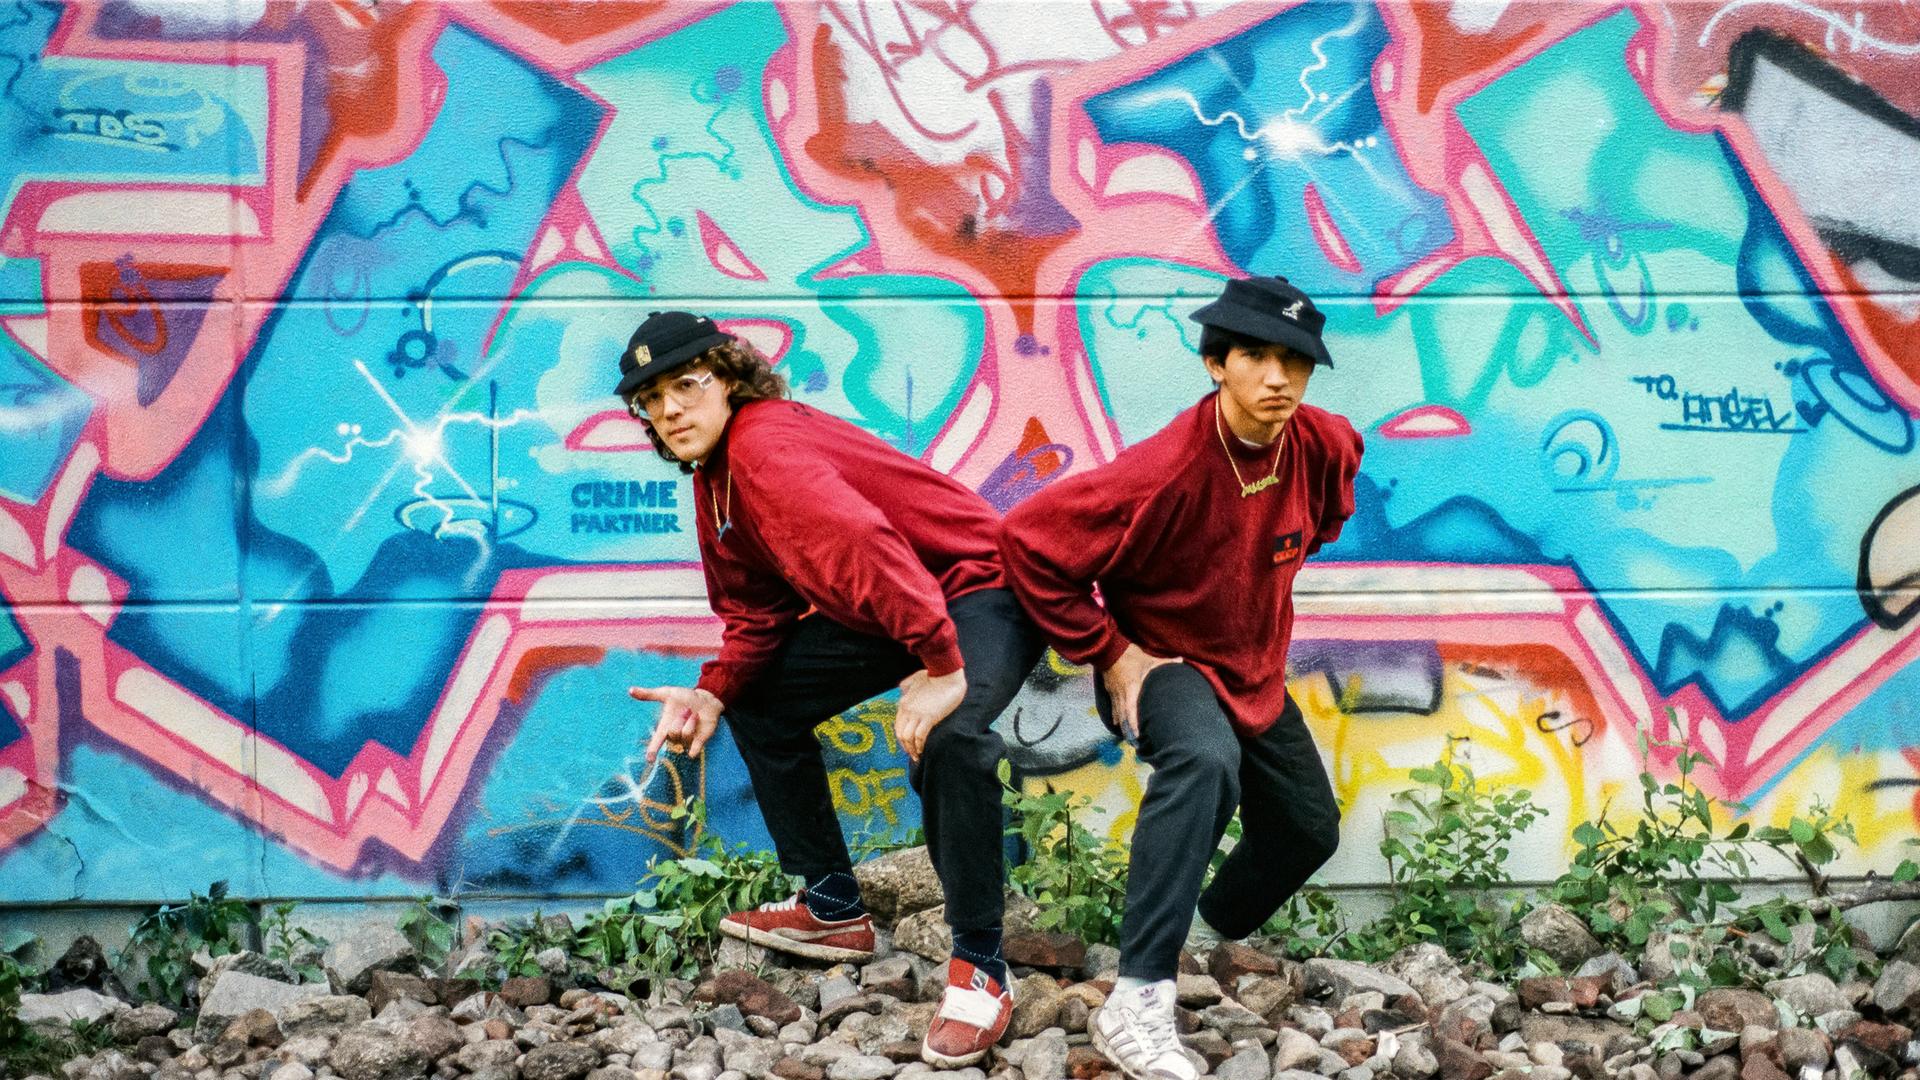 Zwei junge Männer posieren vor einem Graffiti.